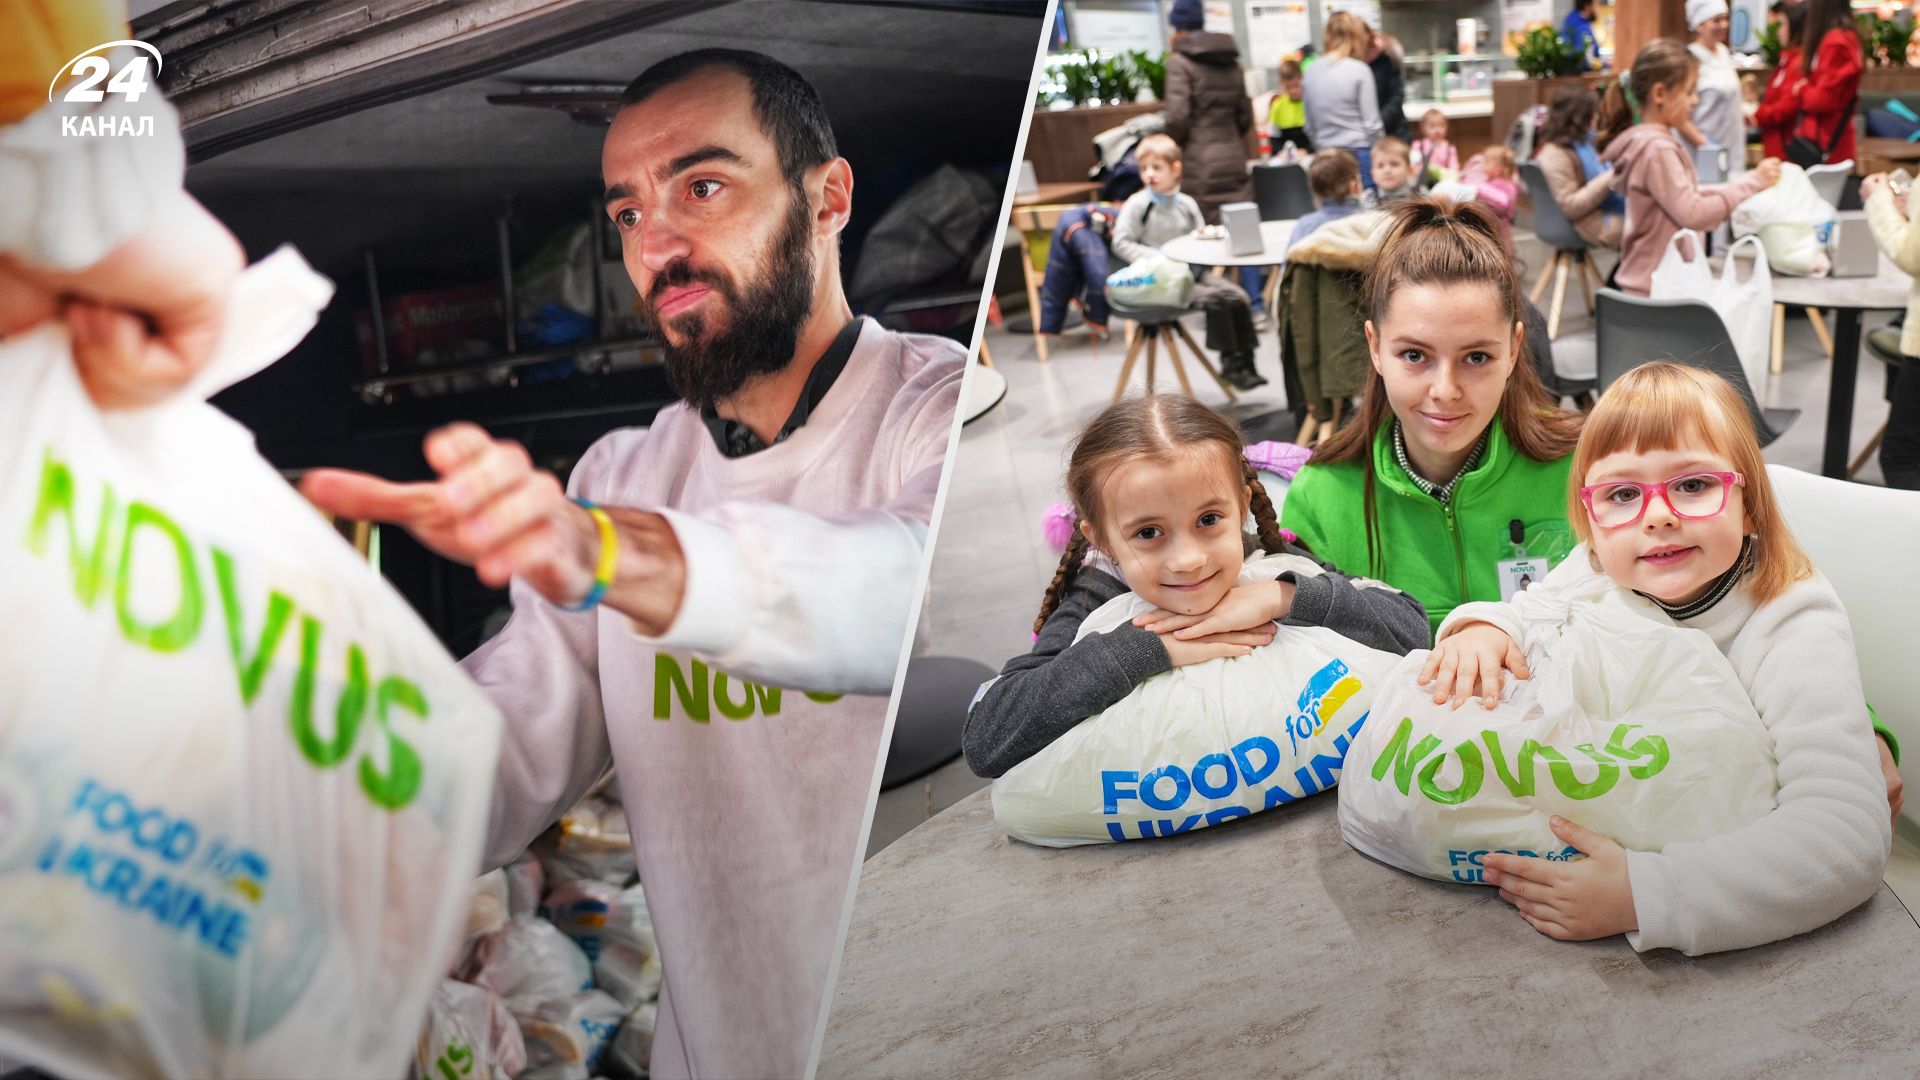 NOVUS та Food for Ukraine продовжують допомагати Україні